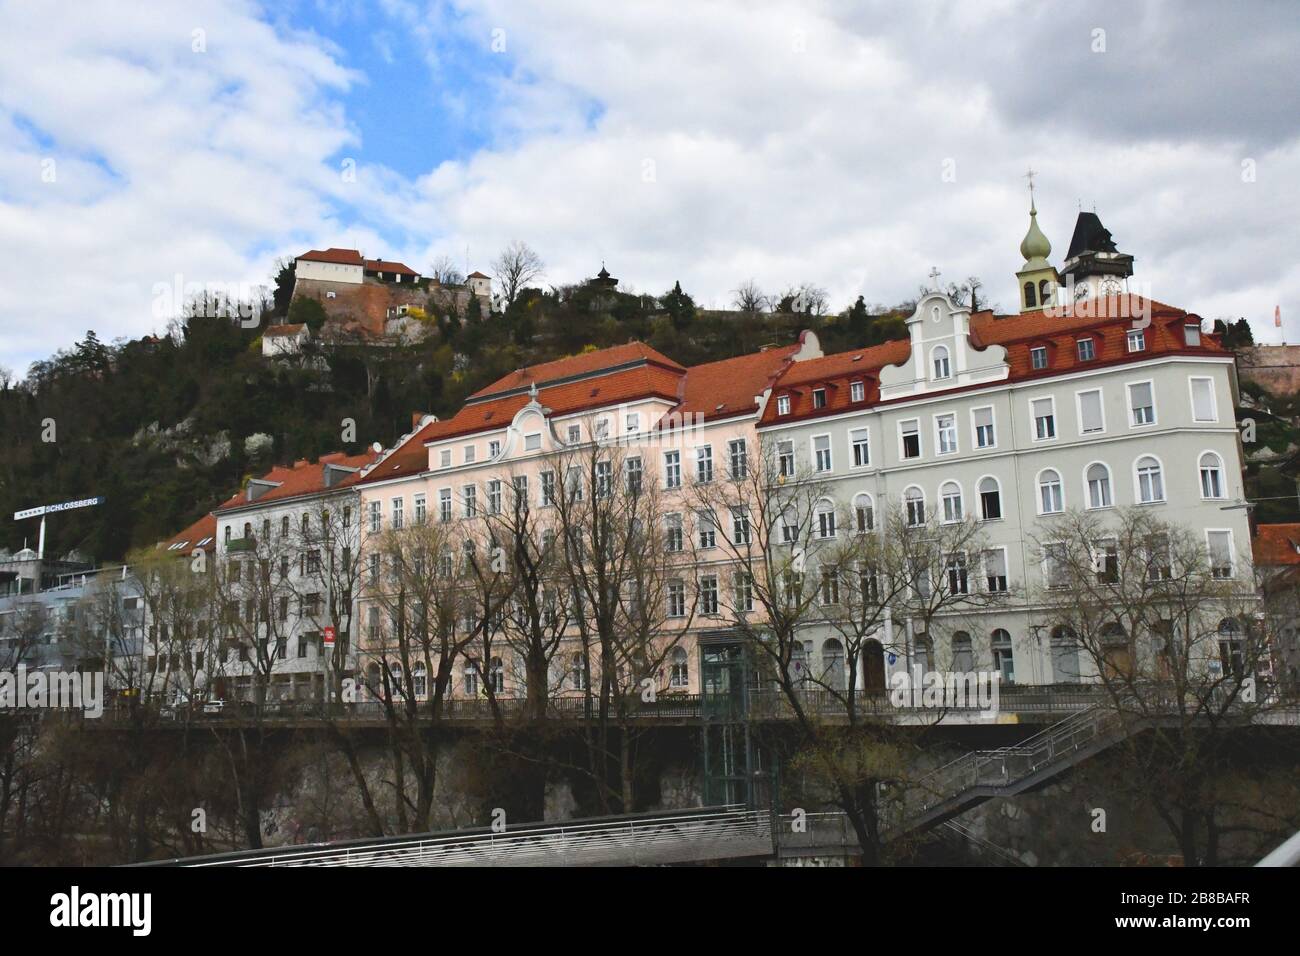 Facade of buildings along the river Mur in Graz, Austria Stock Photo